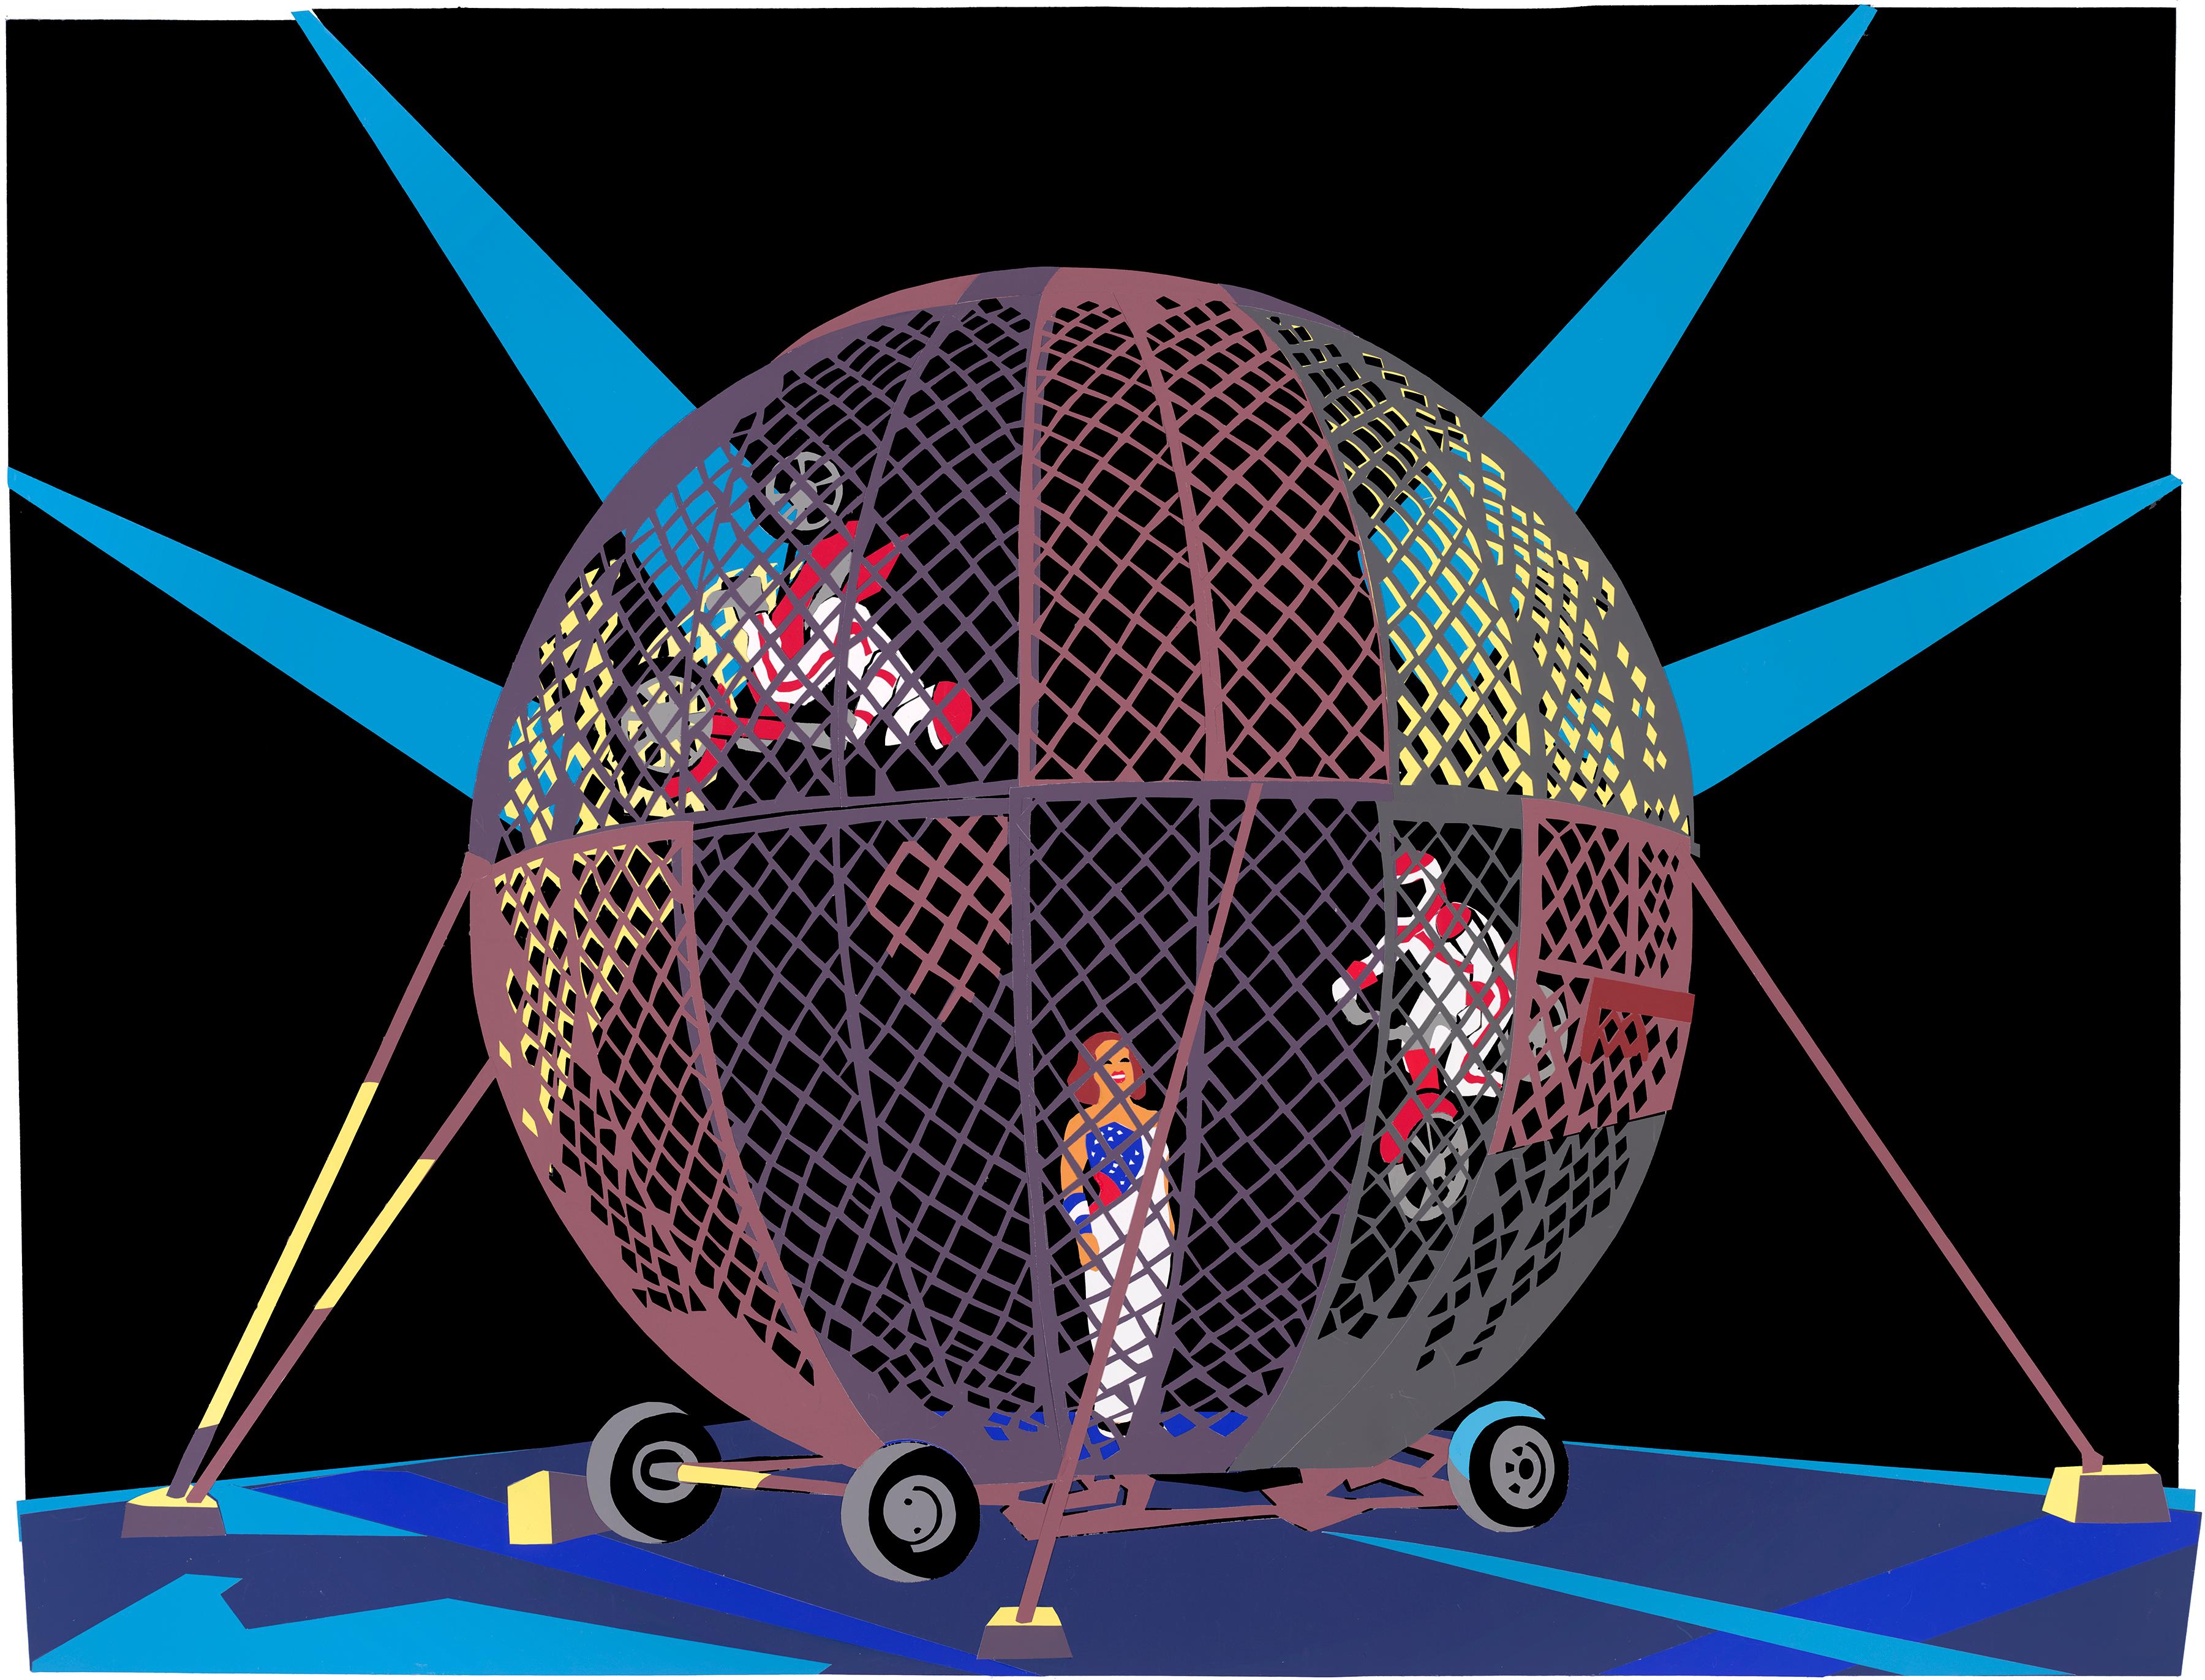 Globe of Thunder leuchtende Farben schwarzer Hintergrund Zirkus daredevil Motorrad Spaß 